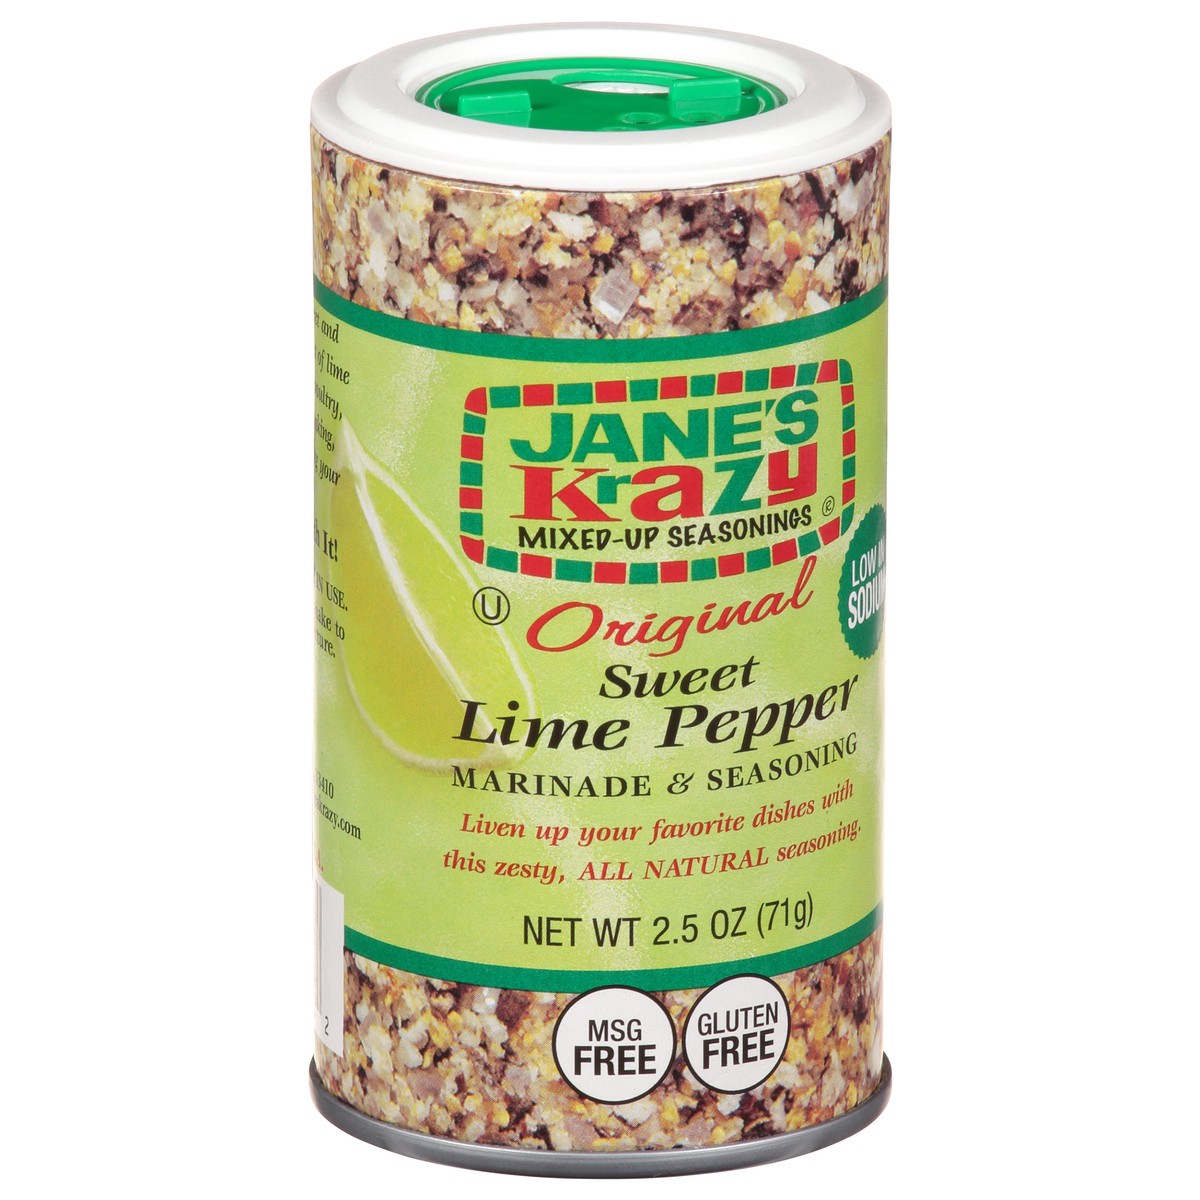 slide 9 of 12, Jane's Krazy Mixed-Up Seasonings Original Sweet Lime Pepper Marinade & Seasoning 2.5 oz, 2.5 oz